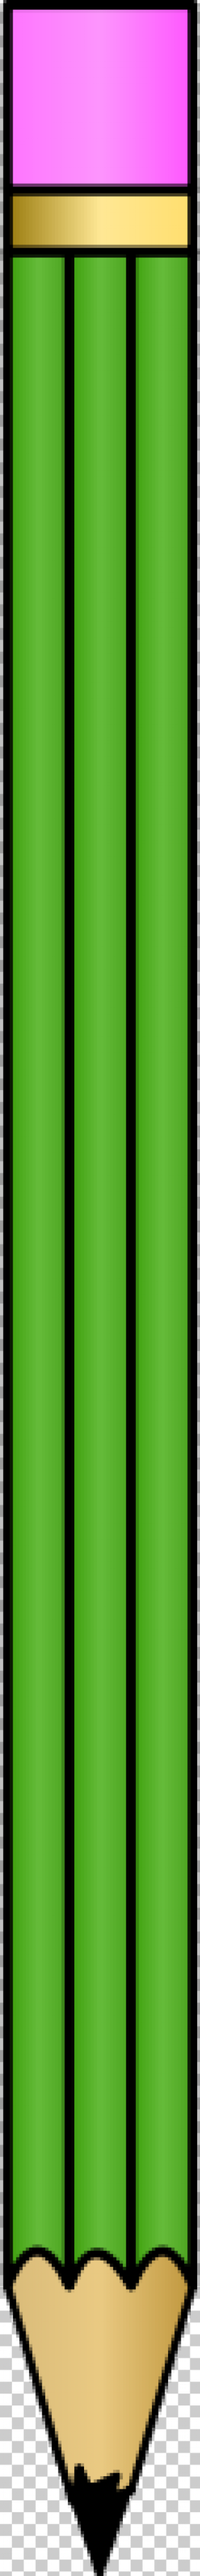 SVG Green pencil-1572960442